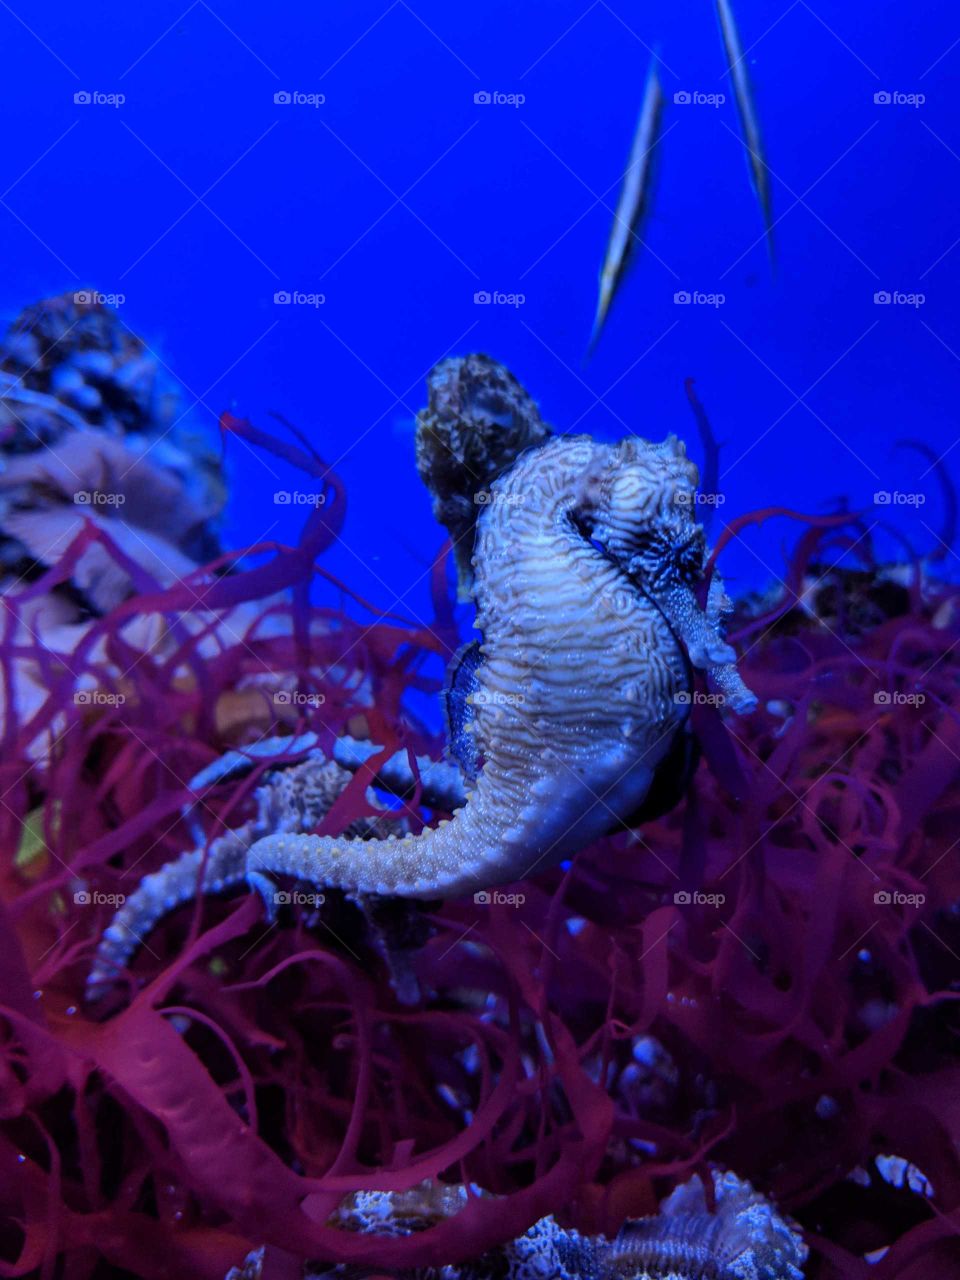 Seahorse in the Denver Aquarium